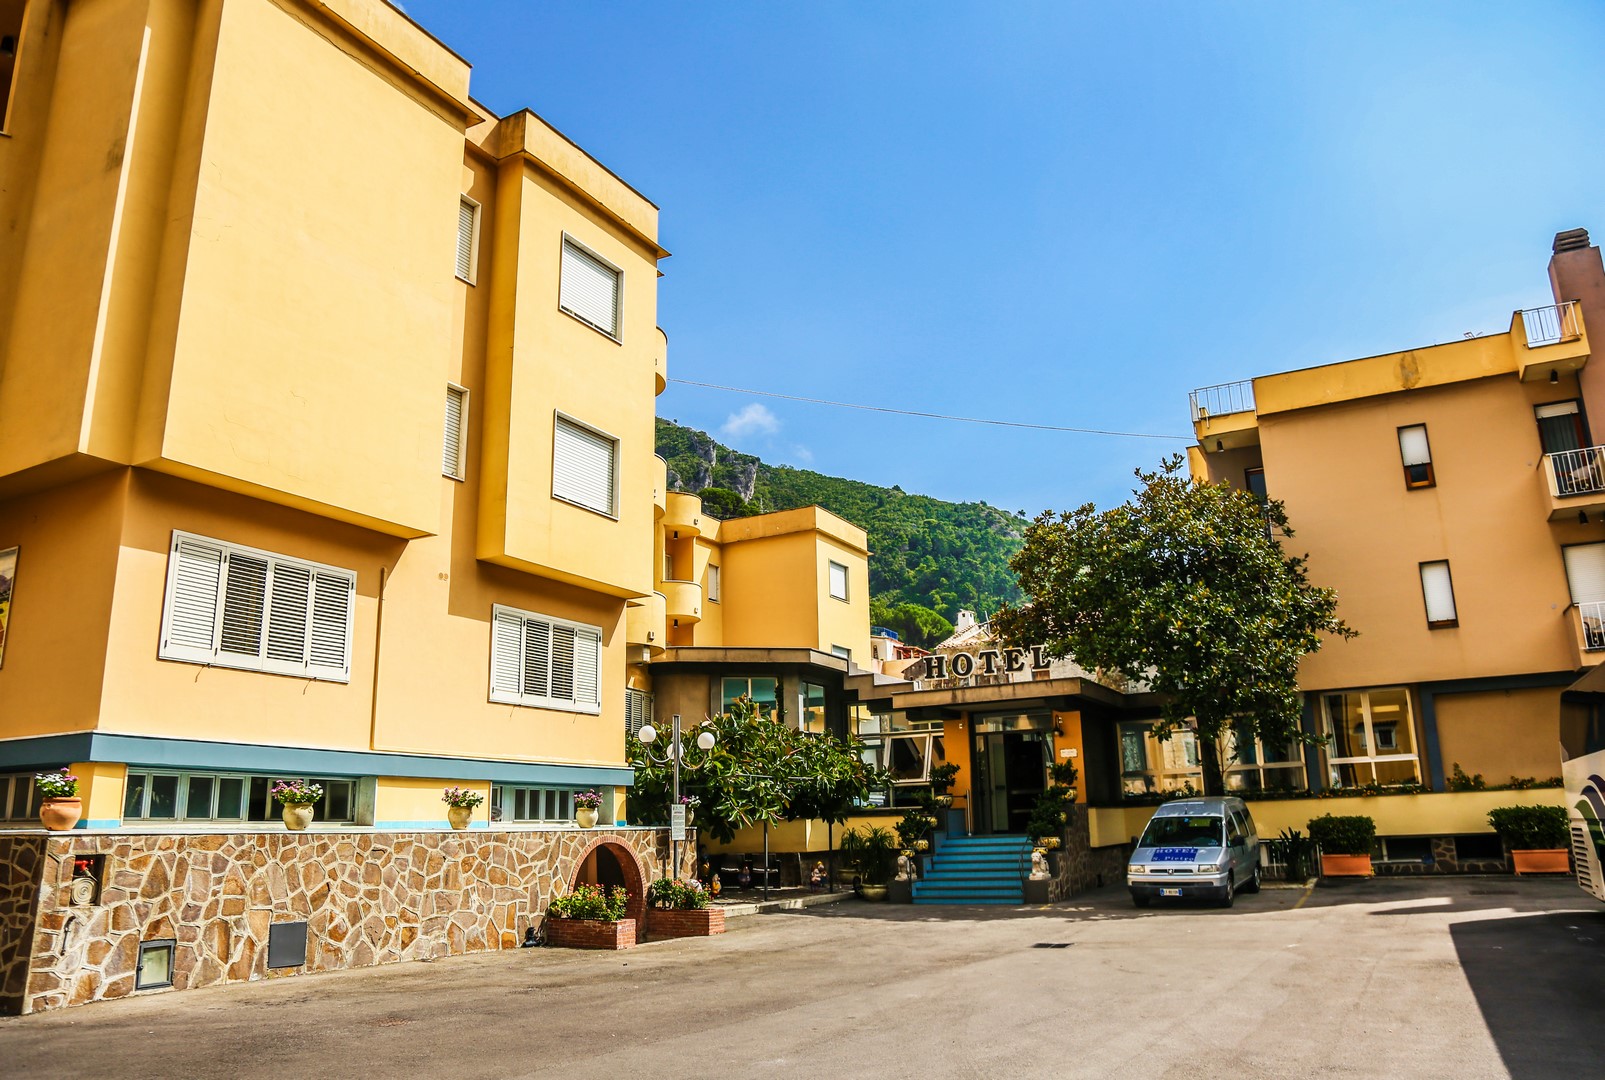 San Pietro Hotel & Residence